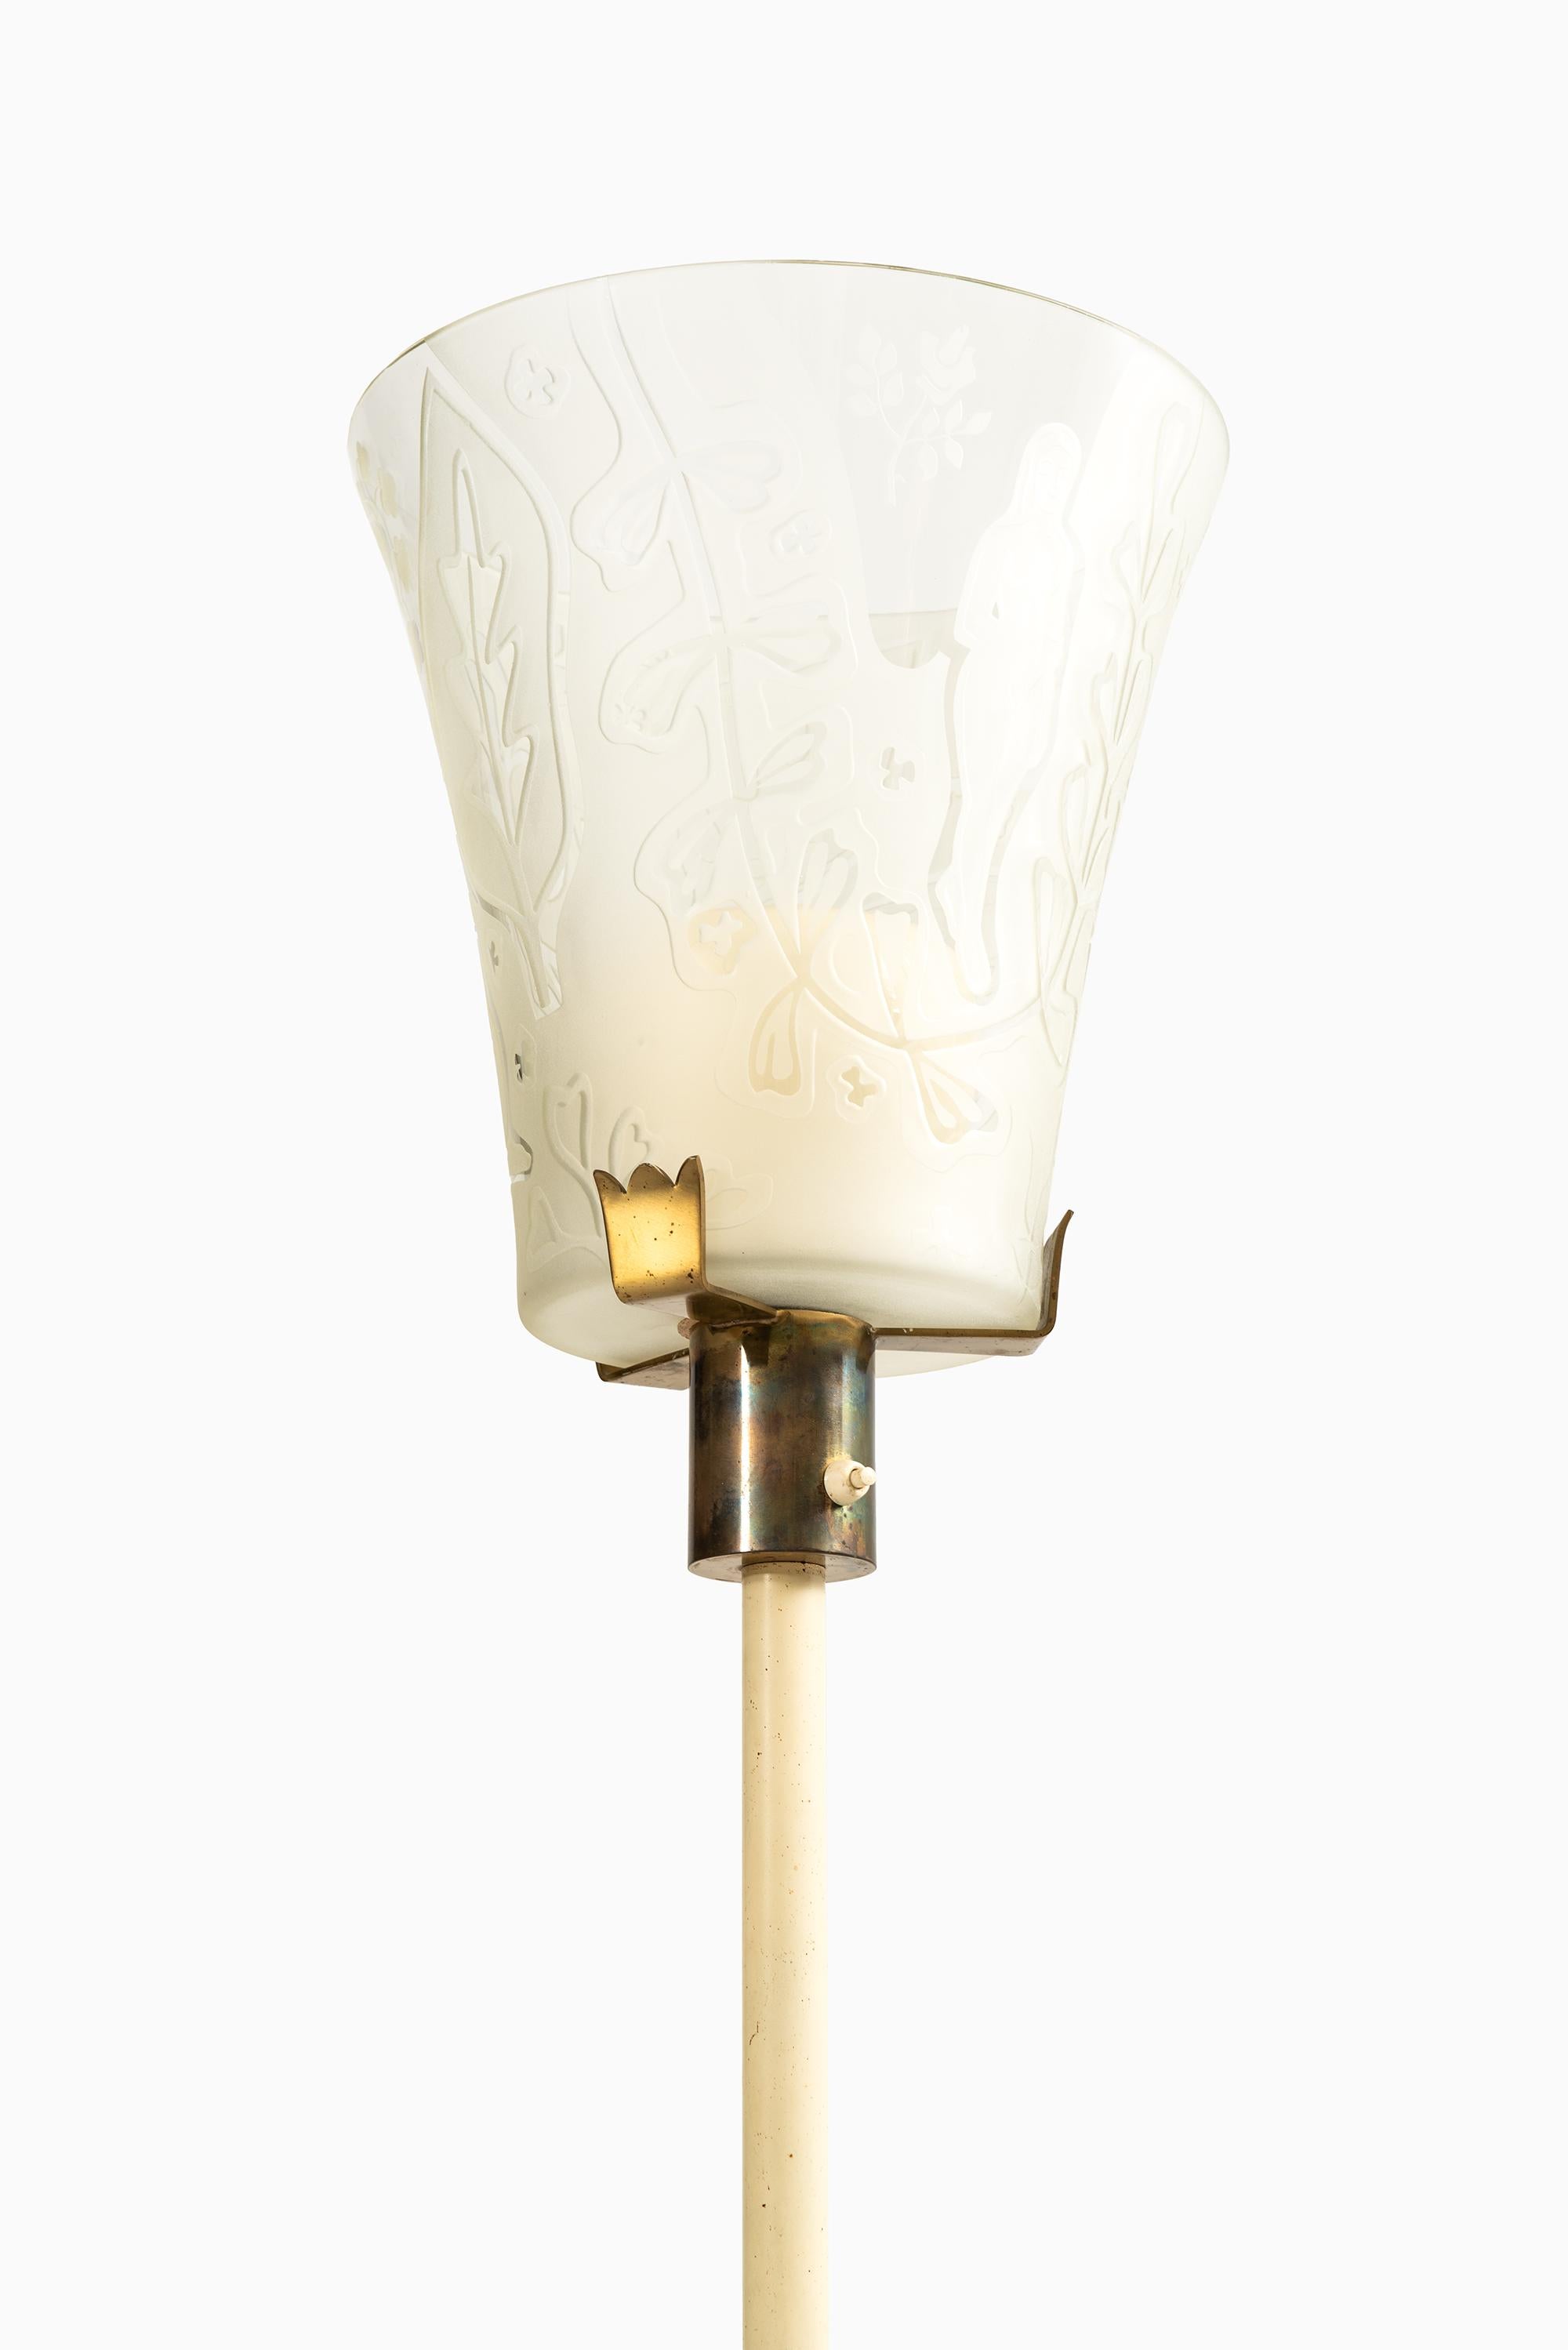 Très rare lampadaire conçu par Bo Notini. Produit par Glössner & Co. en Suède.